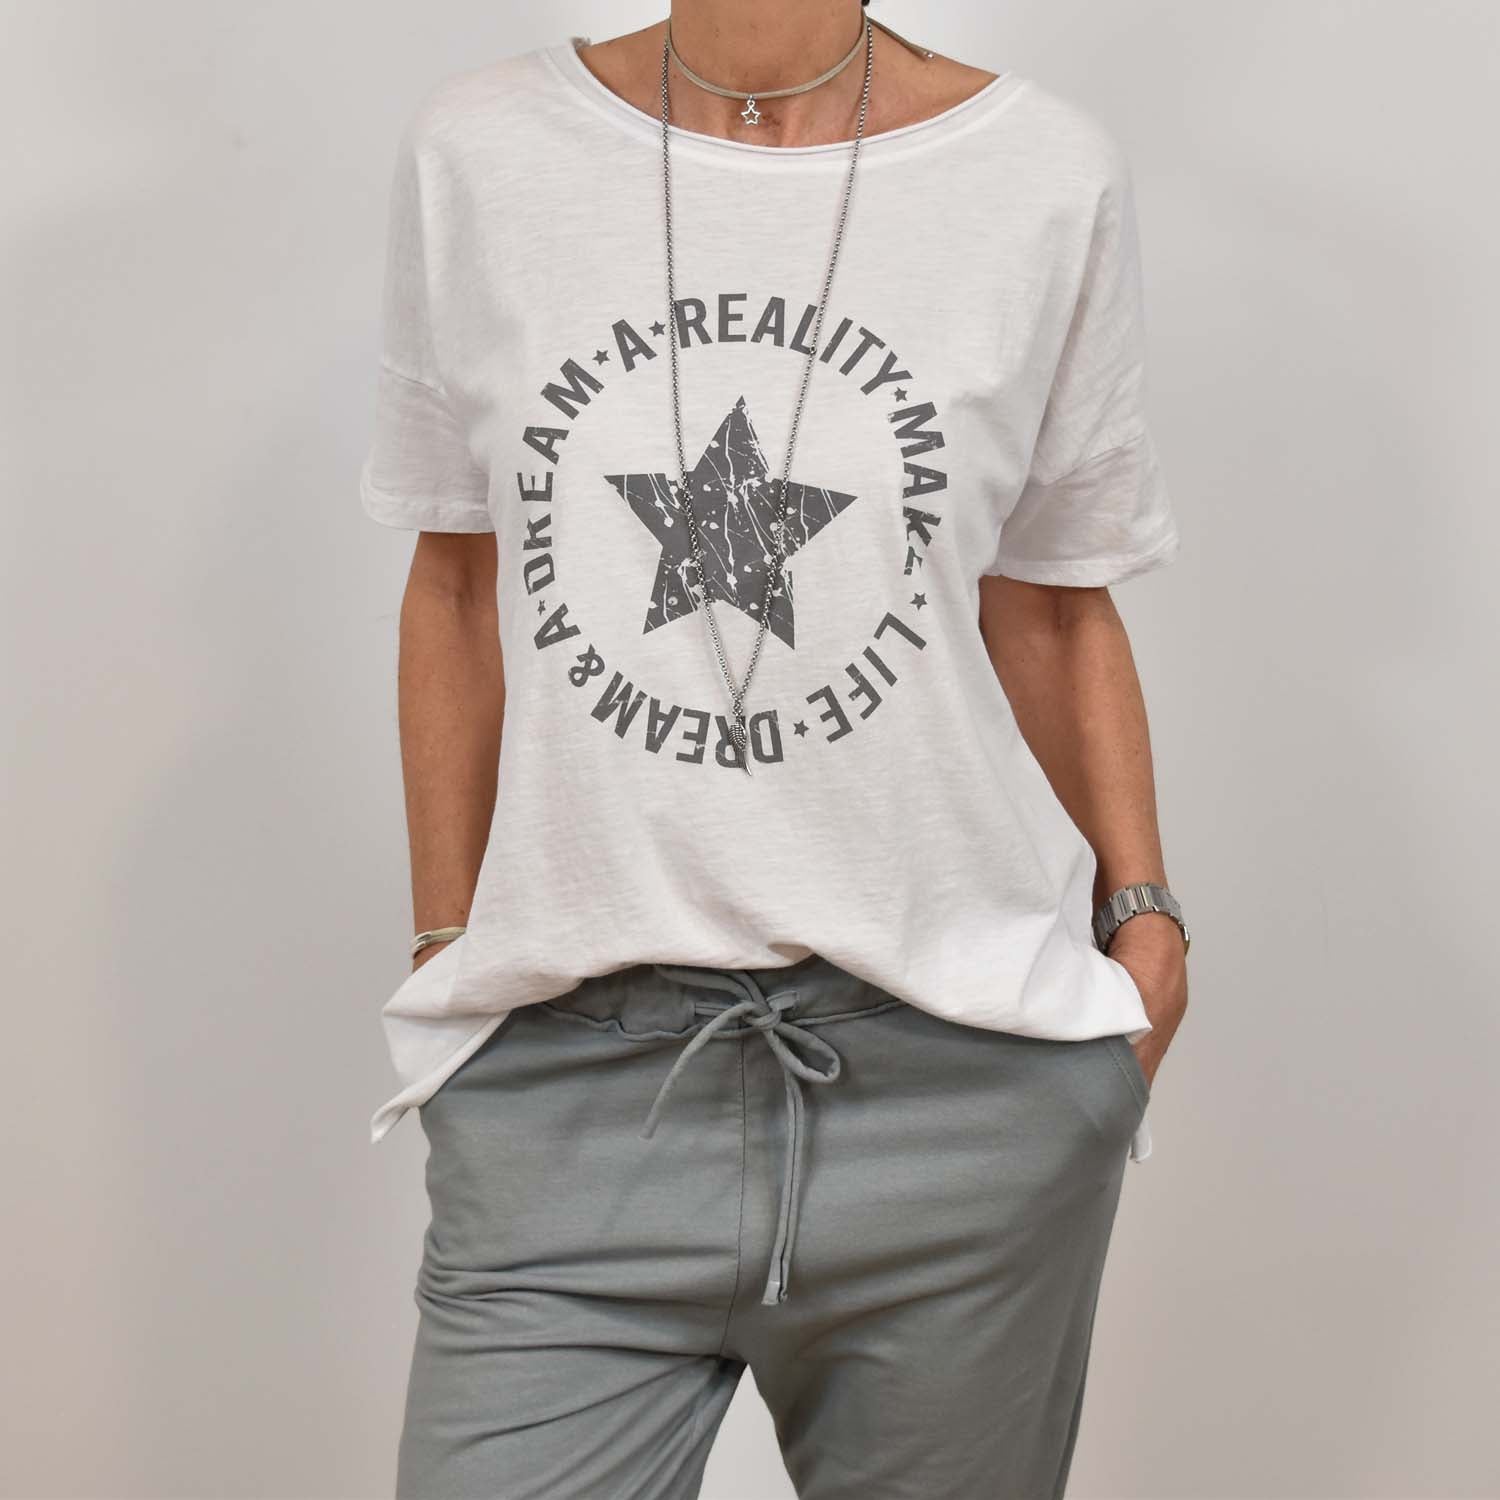 Camiseta estrella 'Dream' blanca